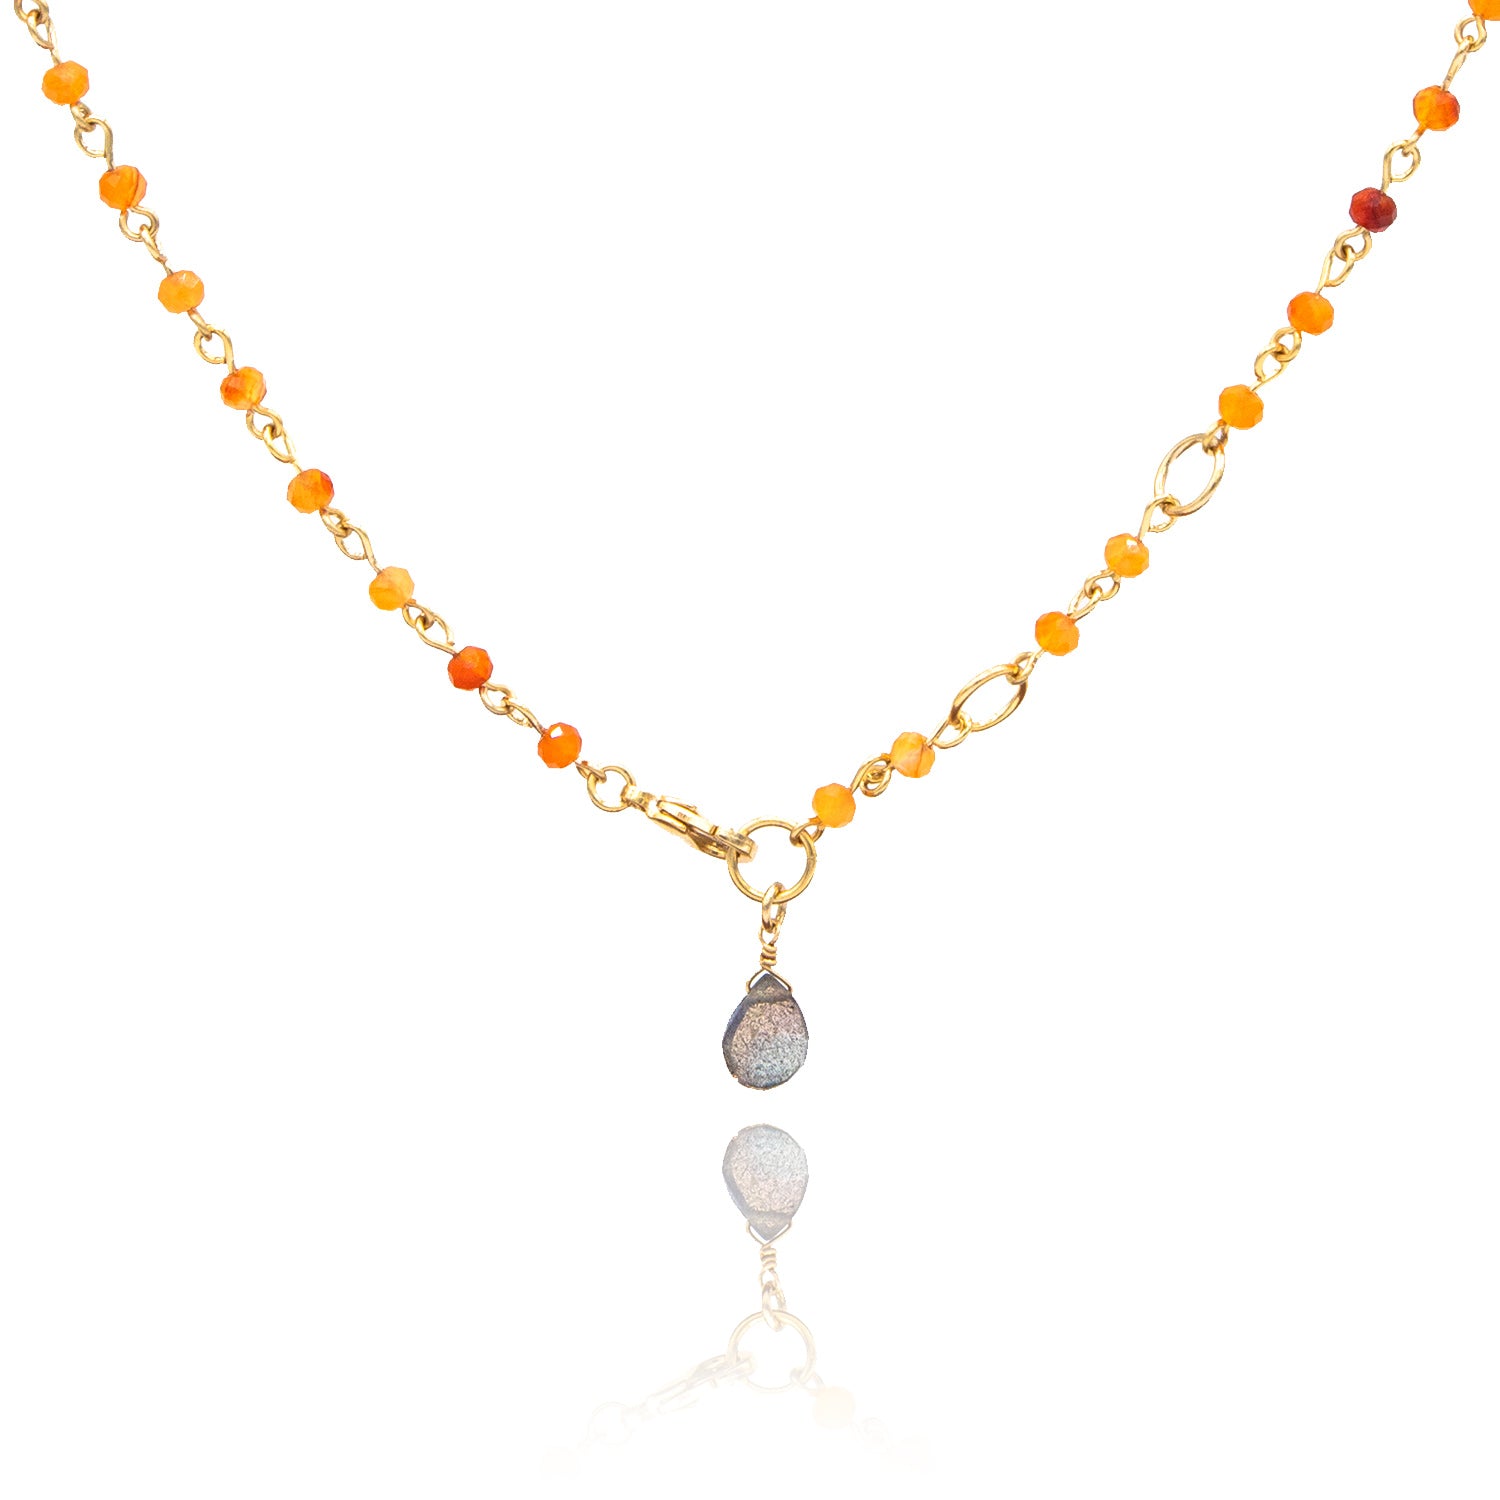 Ethereal Orange 2-Way Bracelet/Necklace